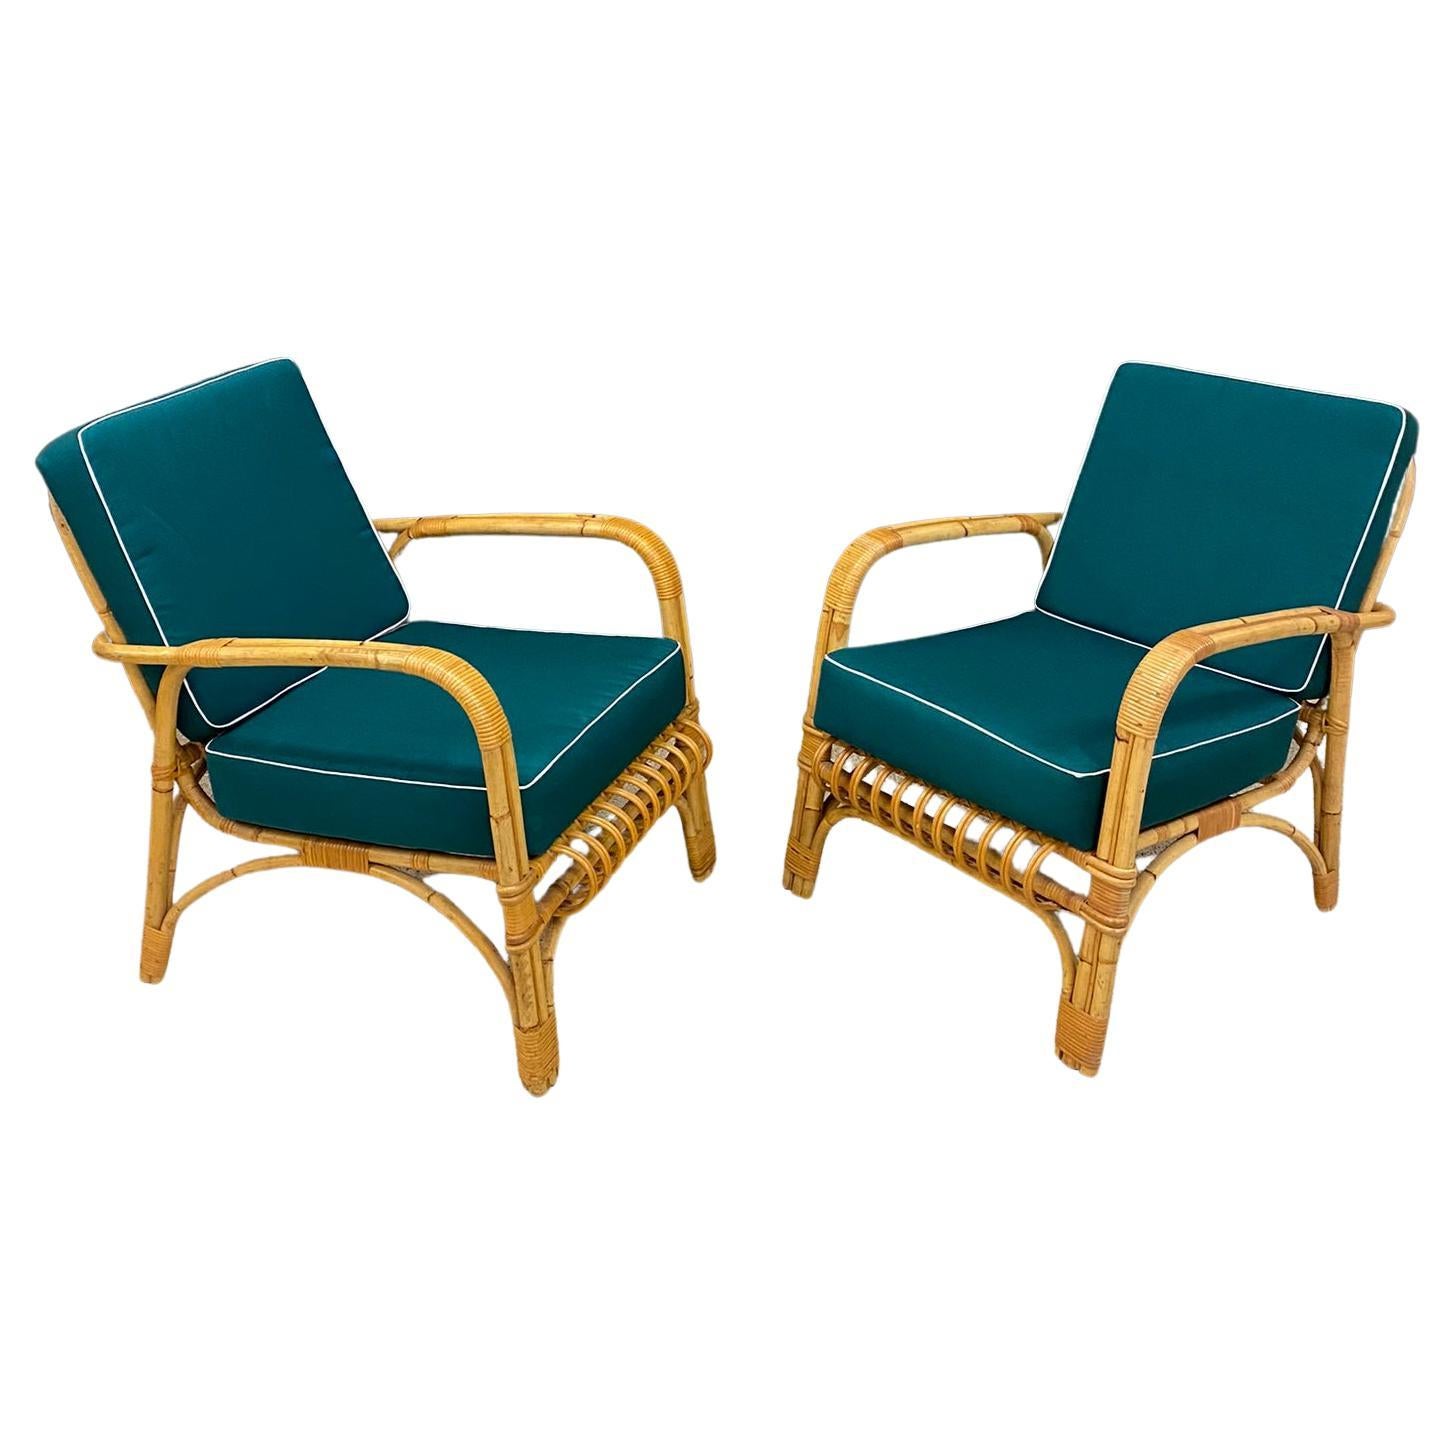 4 fauteuils en rotin et leurs coussins, datant d'environ 1970-1980